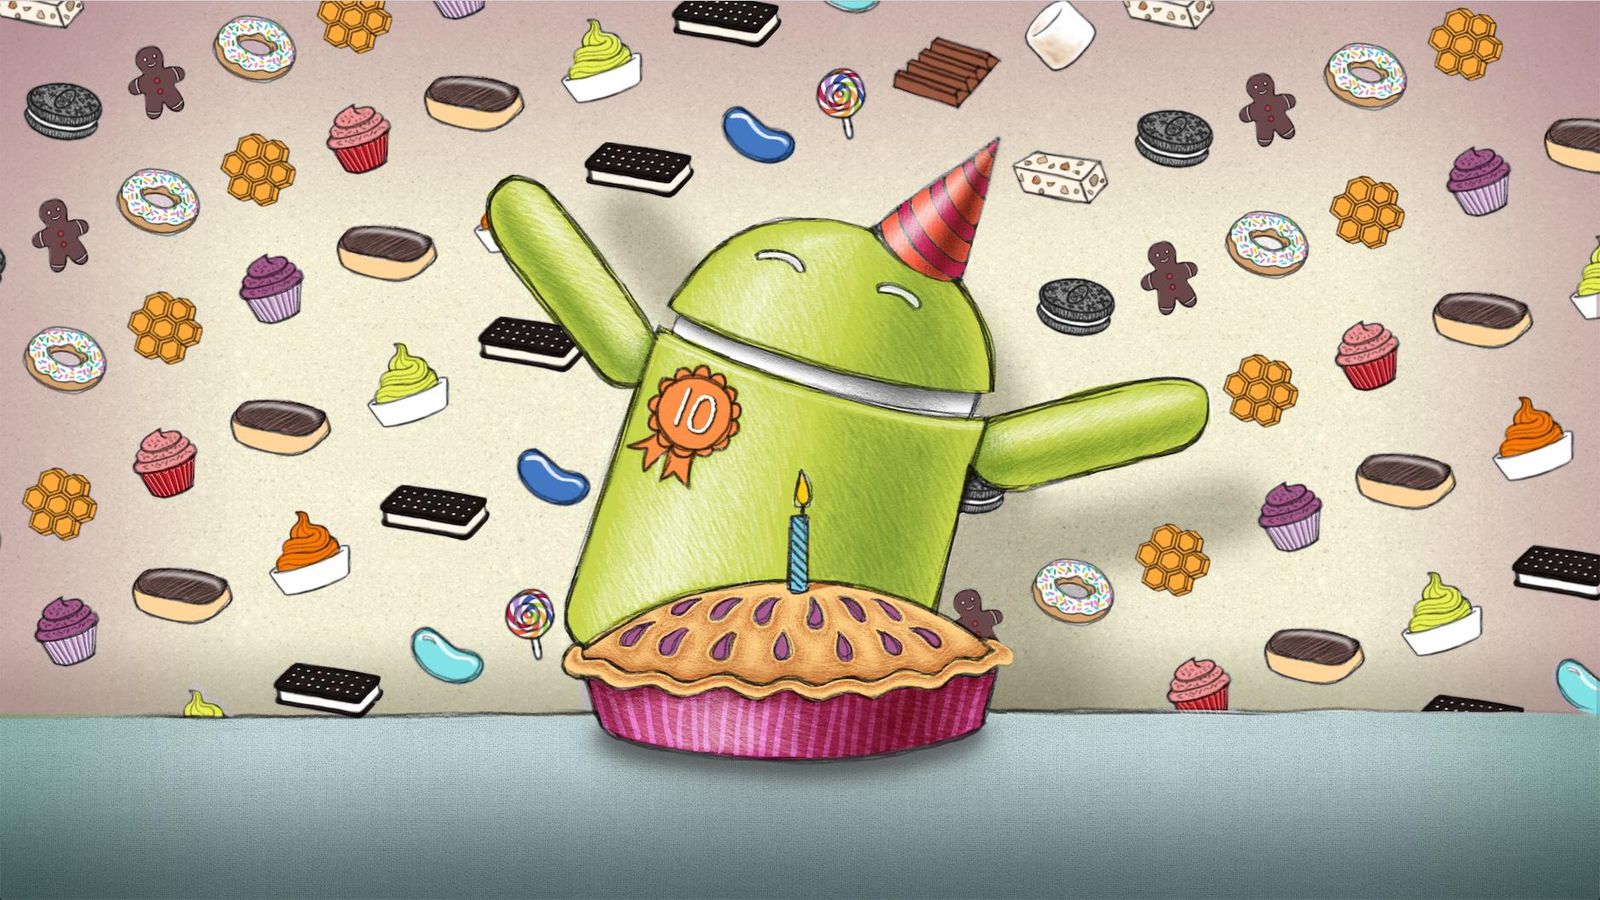 Quindim, Qottab o Queijada: Google, come Quarzo lo chiami il prossimo Android?